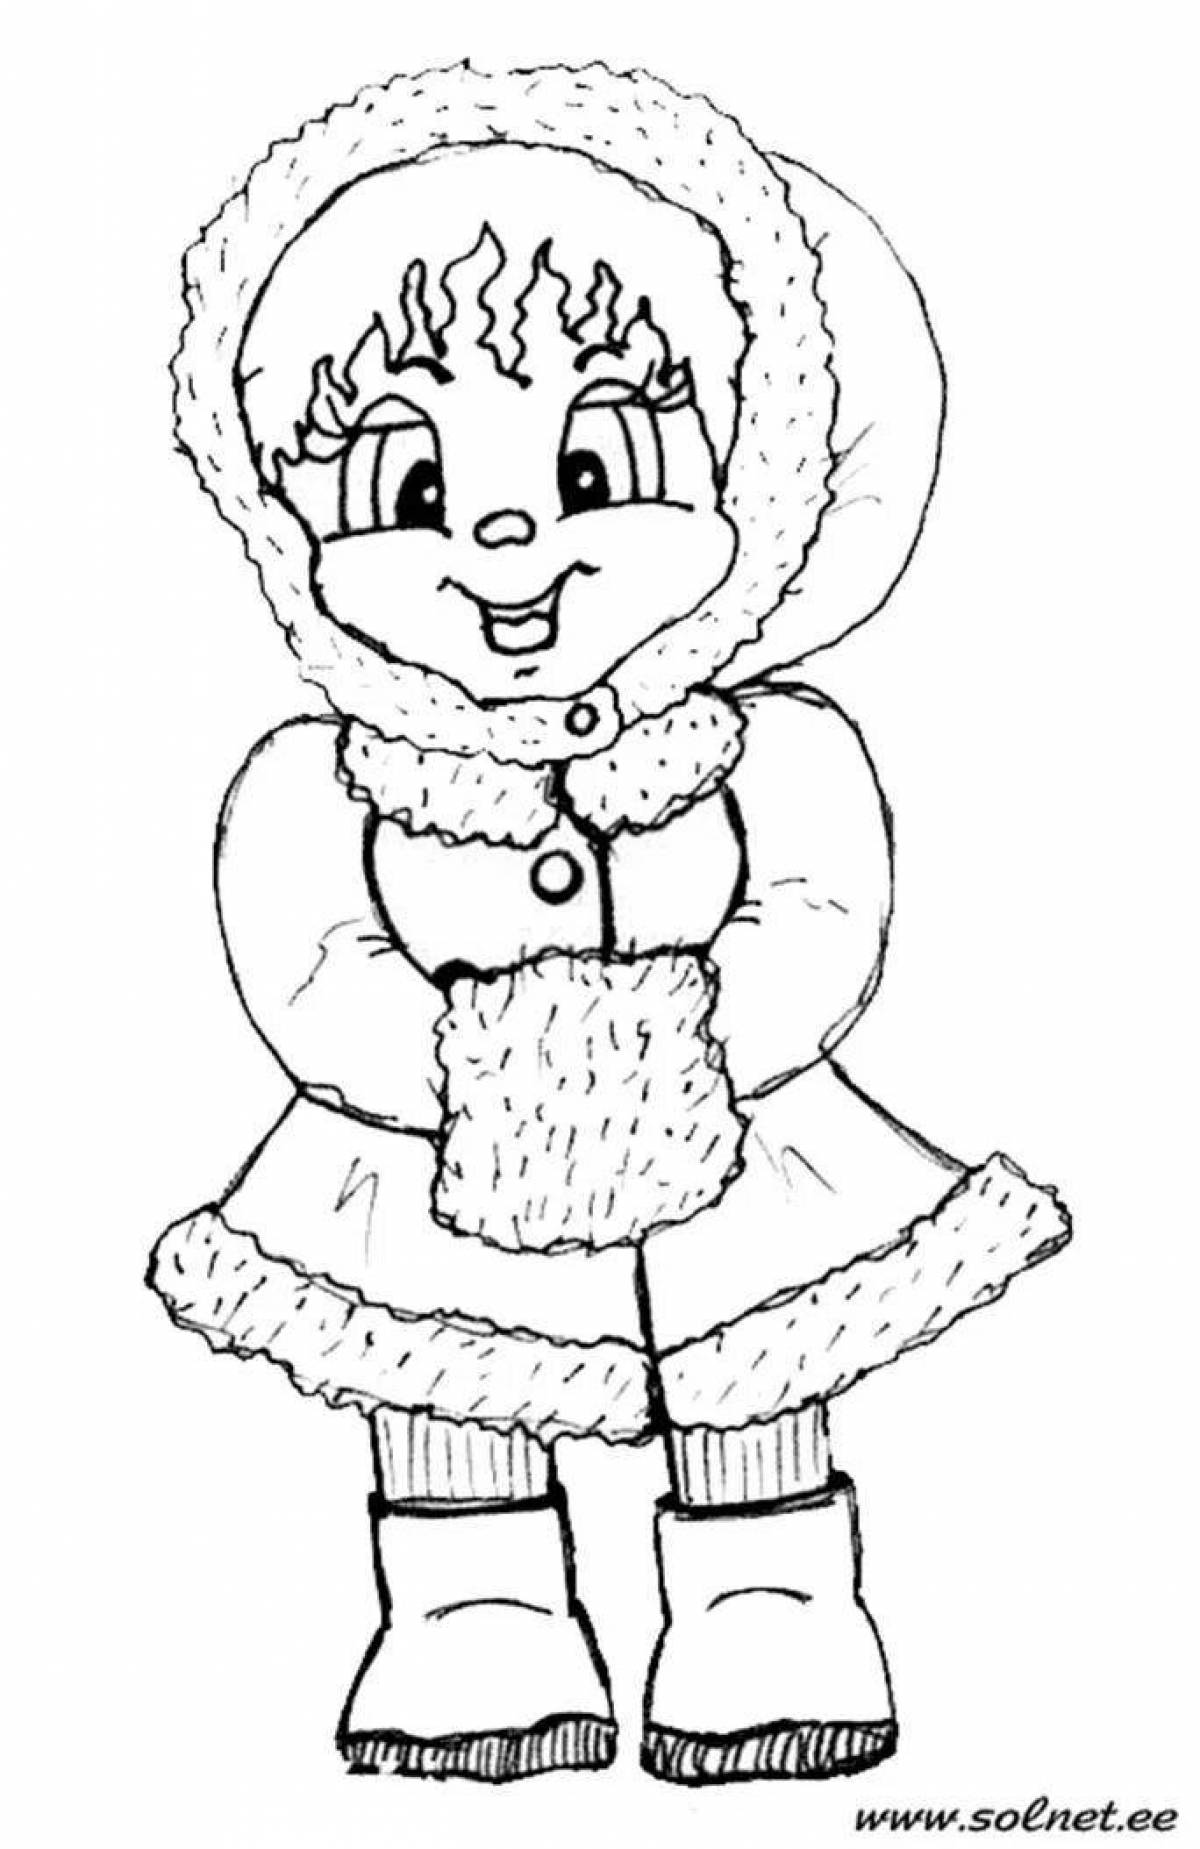 Озорной ребенок в зимней одежде